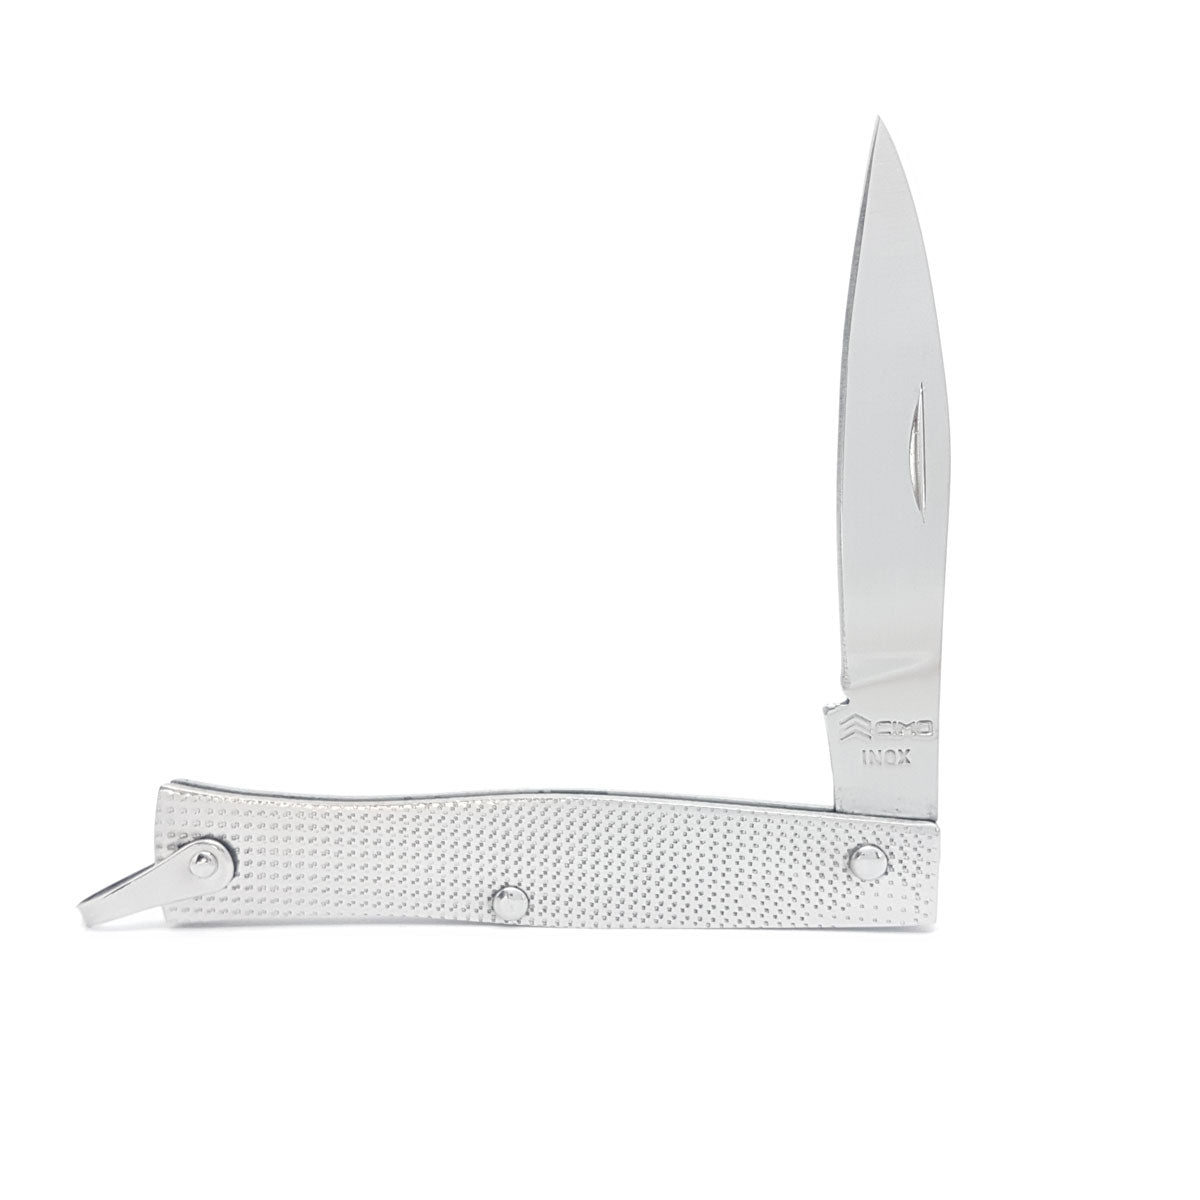 Canivete Cimo Inox Tradicional Com Bainha - 220/6 C/B